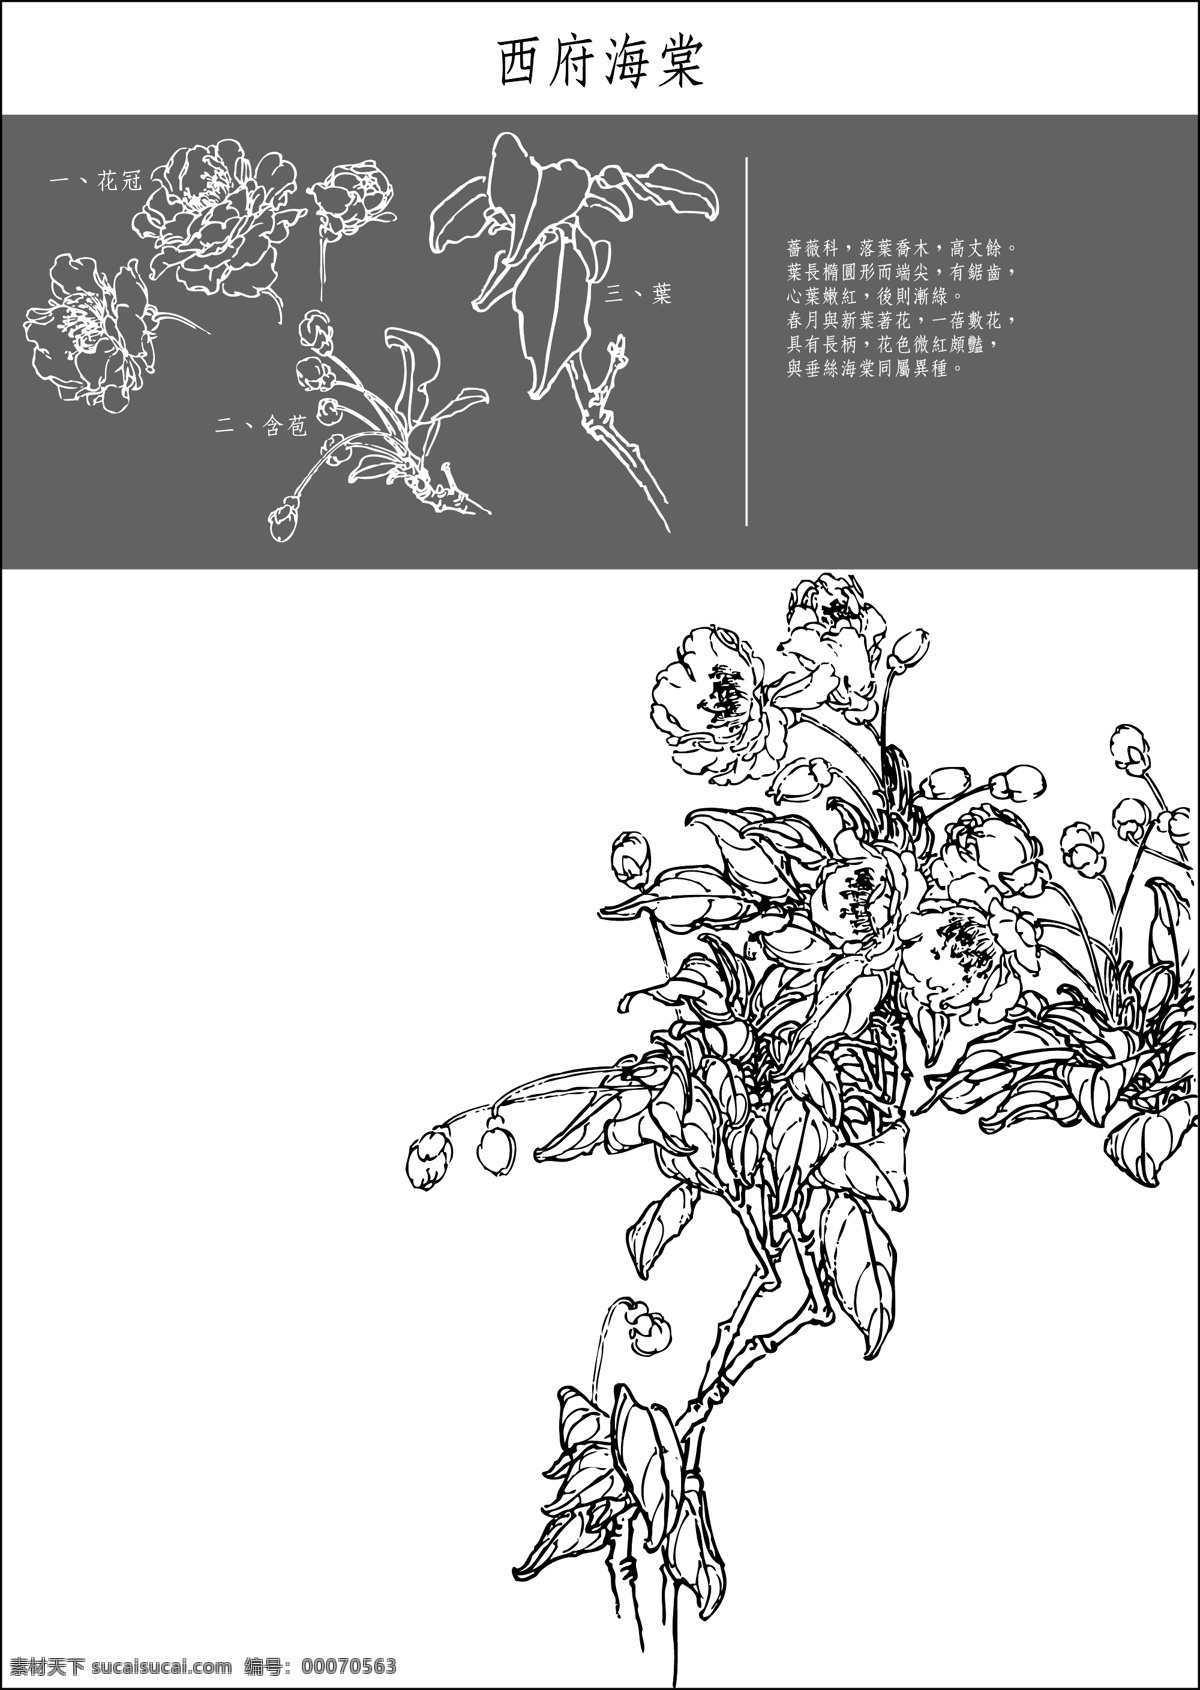 西府海棠 中国风 花卉 白描 线稿 海棠花 植物 矢量 园艺 花草 生物世界